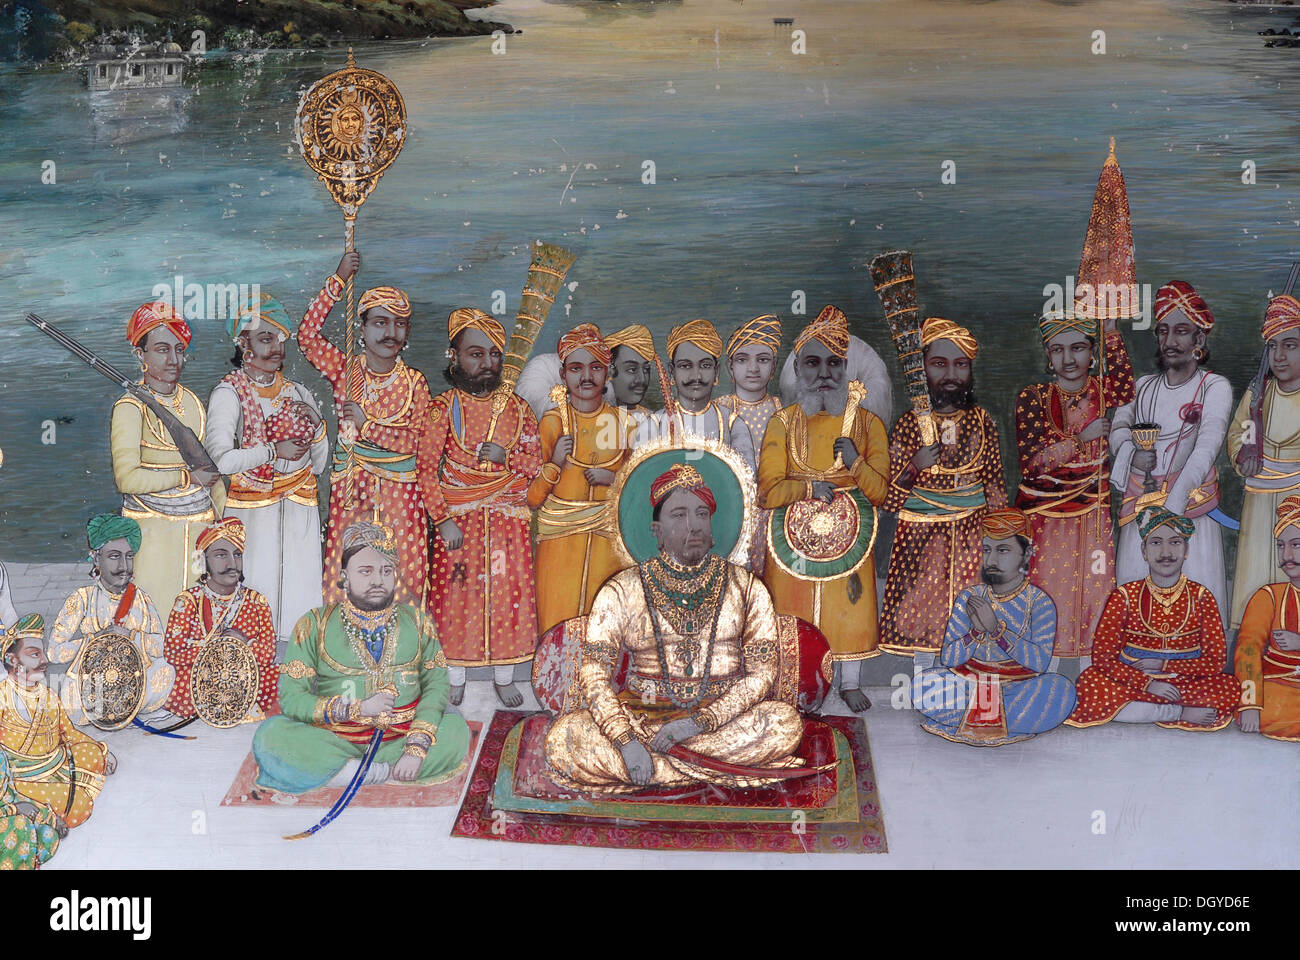 Painting, the Maharaja of Dungarpur and his entourage at an audience, Juna Mahal, Old Palace, Dungarpur, Rajasthan, India, Asia Stock Photo